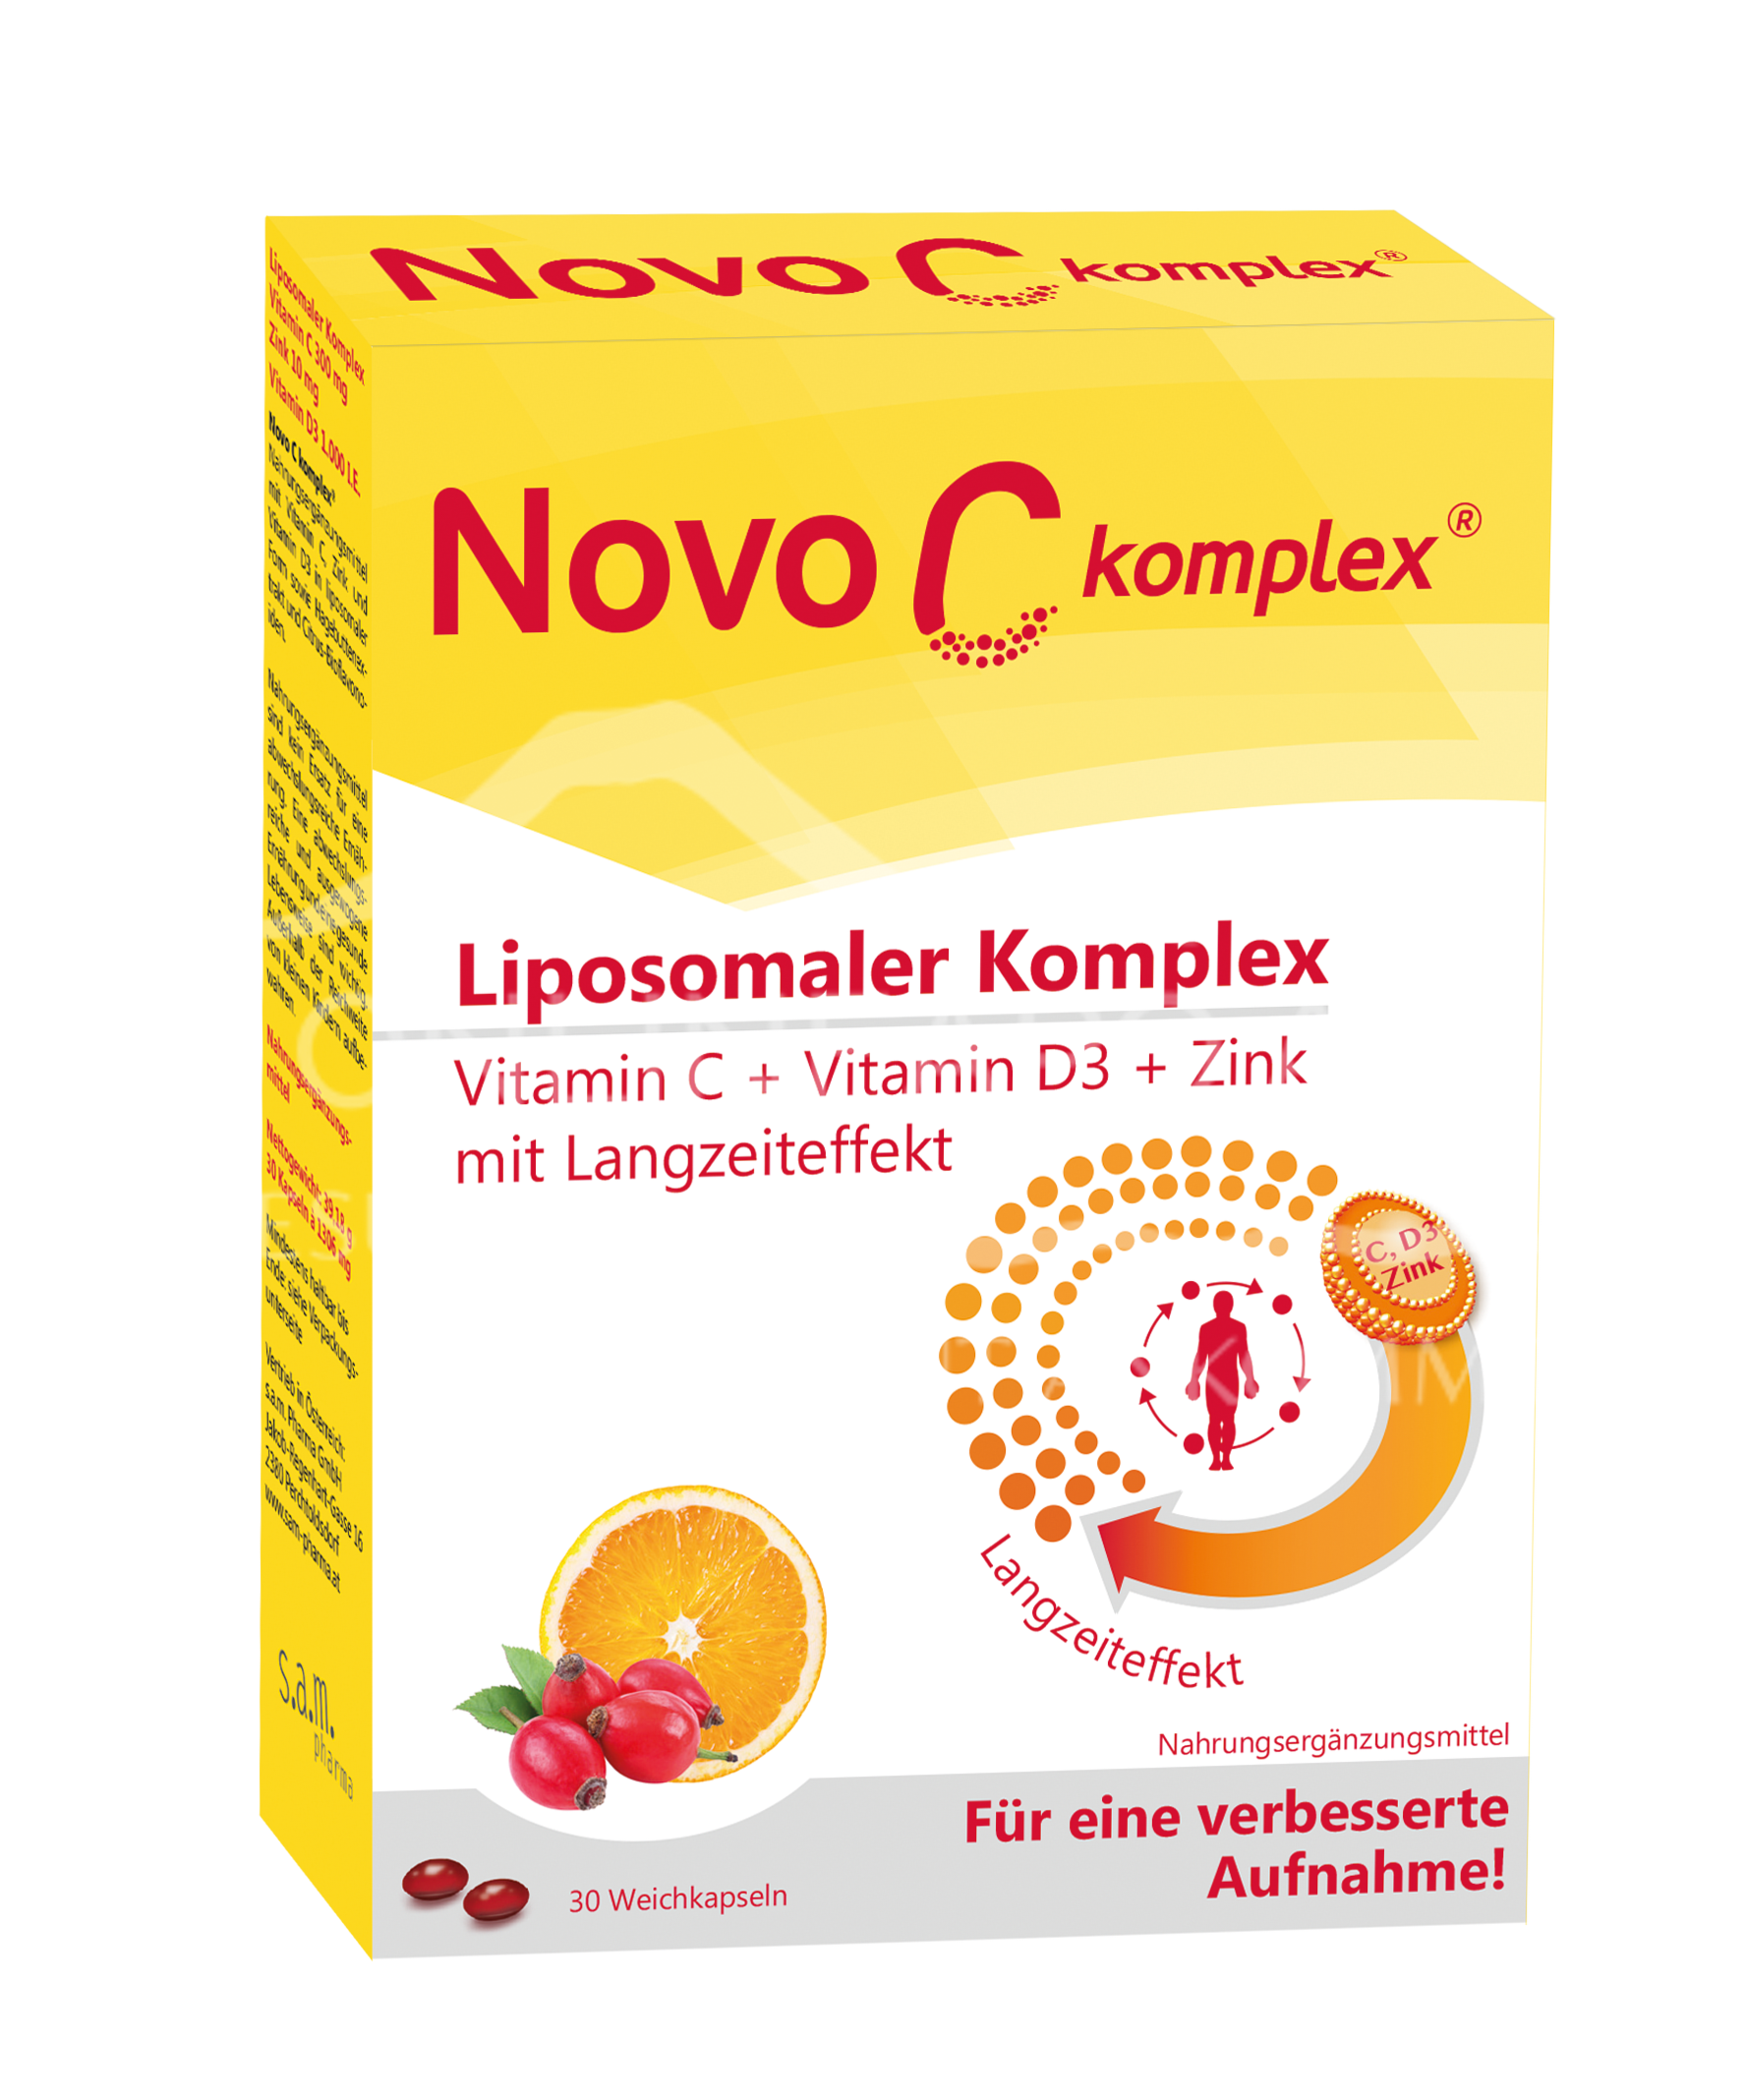 NovoC komplex Liposomaler Komplex Kapseln